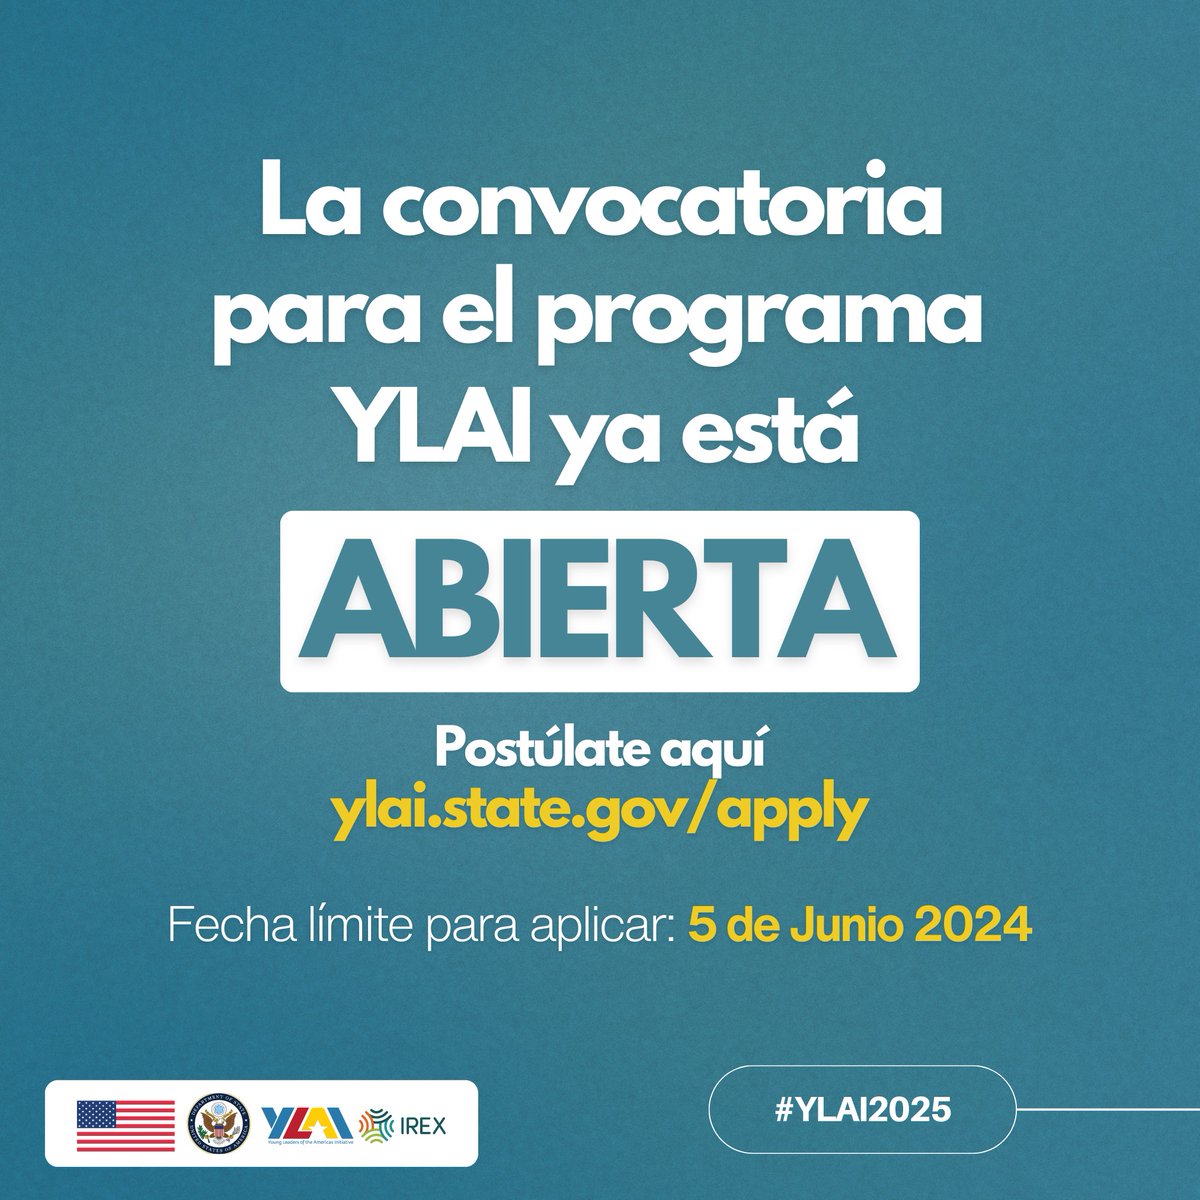 ¡La convocatoria para #YLAI2025 está abierta ya! Participa en una beca de emprendimiento de 4 semanas con un entrenamiento de liderazgo en #EEUU. +Información: https://owly/5BUj50RAZuK. ¡Envía tu solicitud antes del 5 de junio!